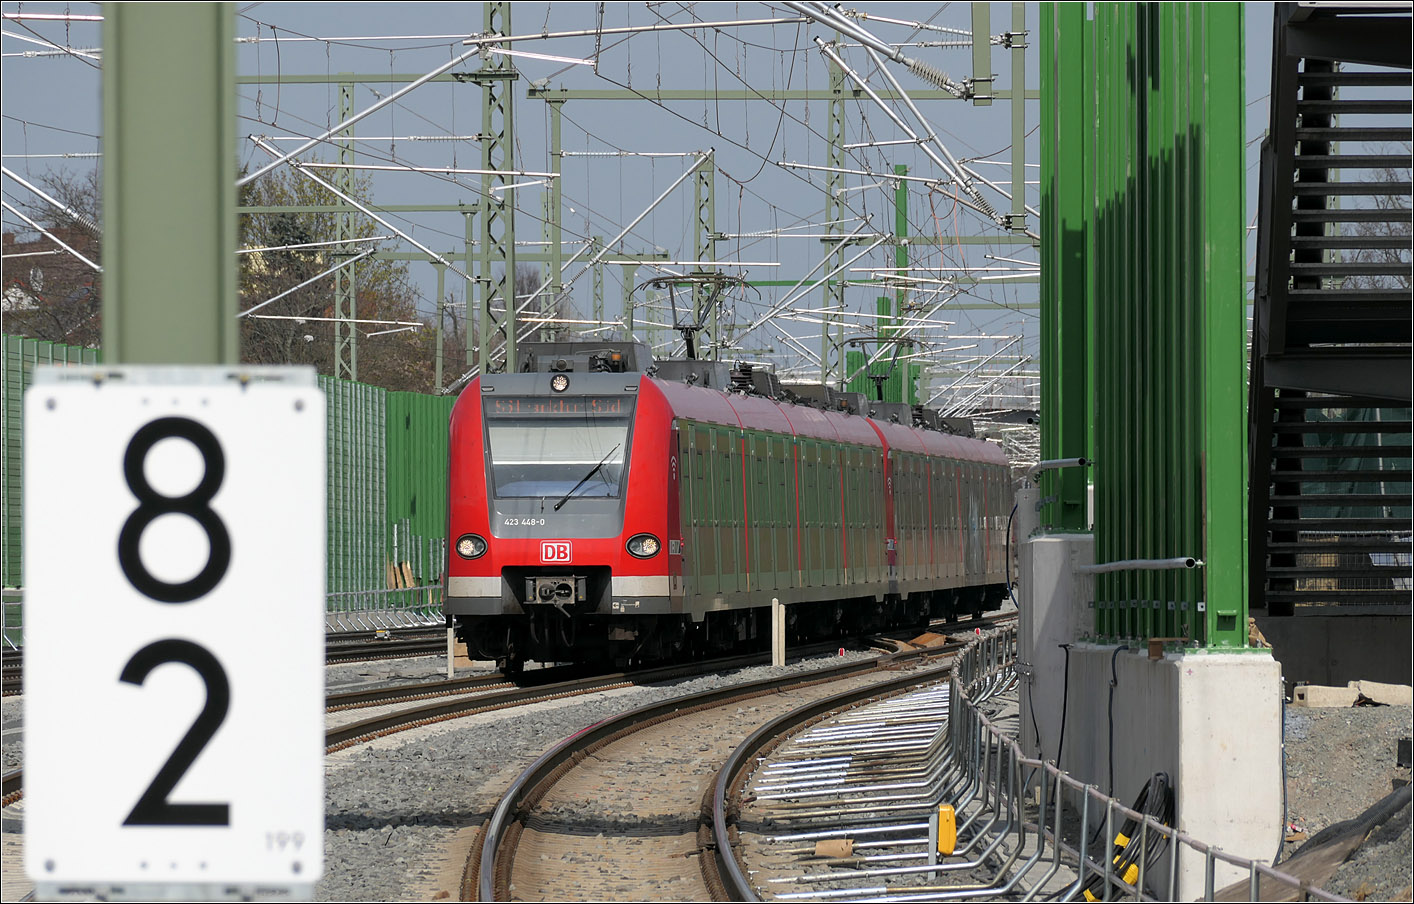 Jetzt (hoffentlich) ungestörte Fahrt -

...für die S-Bahnlinie S6 im Abschnitt ab Bad Vilbel in Richtung Frankfurt durch den viergleisigen Ausbau der Main-Weser-Bahn in diesem Abschnitt. Auch wird so ein 15 Minuten-Takt ab Bad Vilbel ermöglicht. 

Die S6 soll in Zukunft bis Langen und Darmstadt verkehren und nicht mehr in Frankfurt Süd enden. Dort soll dann der Endpunkt der Linien S3 und S4 sein.

Einfahrt von 423 448-0 führend in die Station Frankfurt-Eschersheim.

21.03.2024 (M)